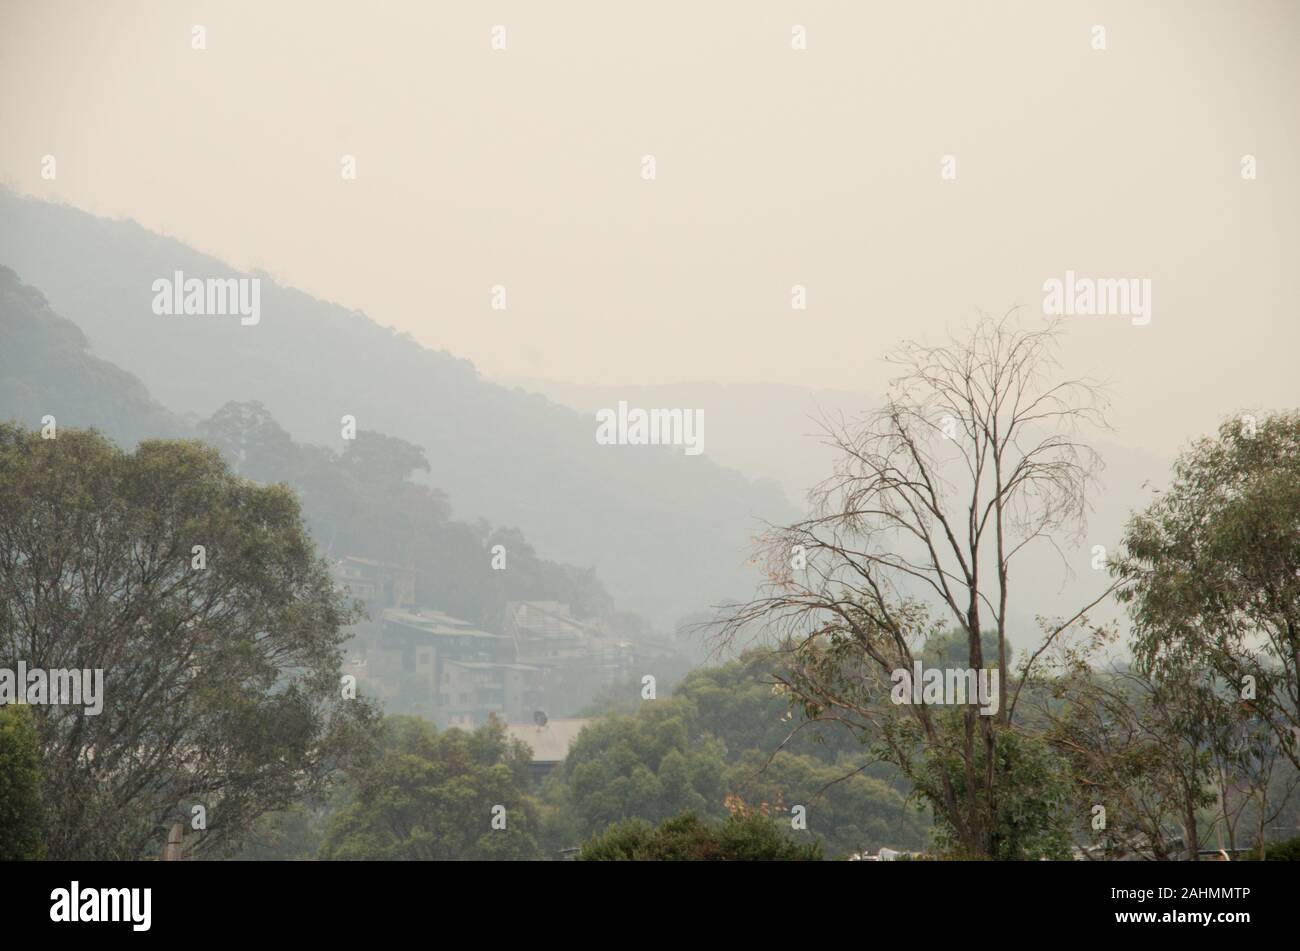 Thredbo, Australie - 31 décembre 2019 : à partir de la brume de fumée dangereuse à proximité des feux de brousse dans l'air Banque D'Images